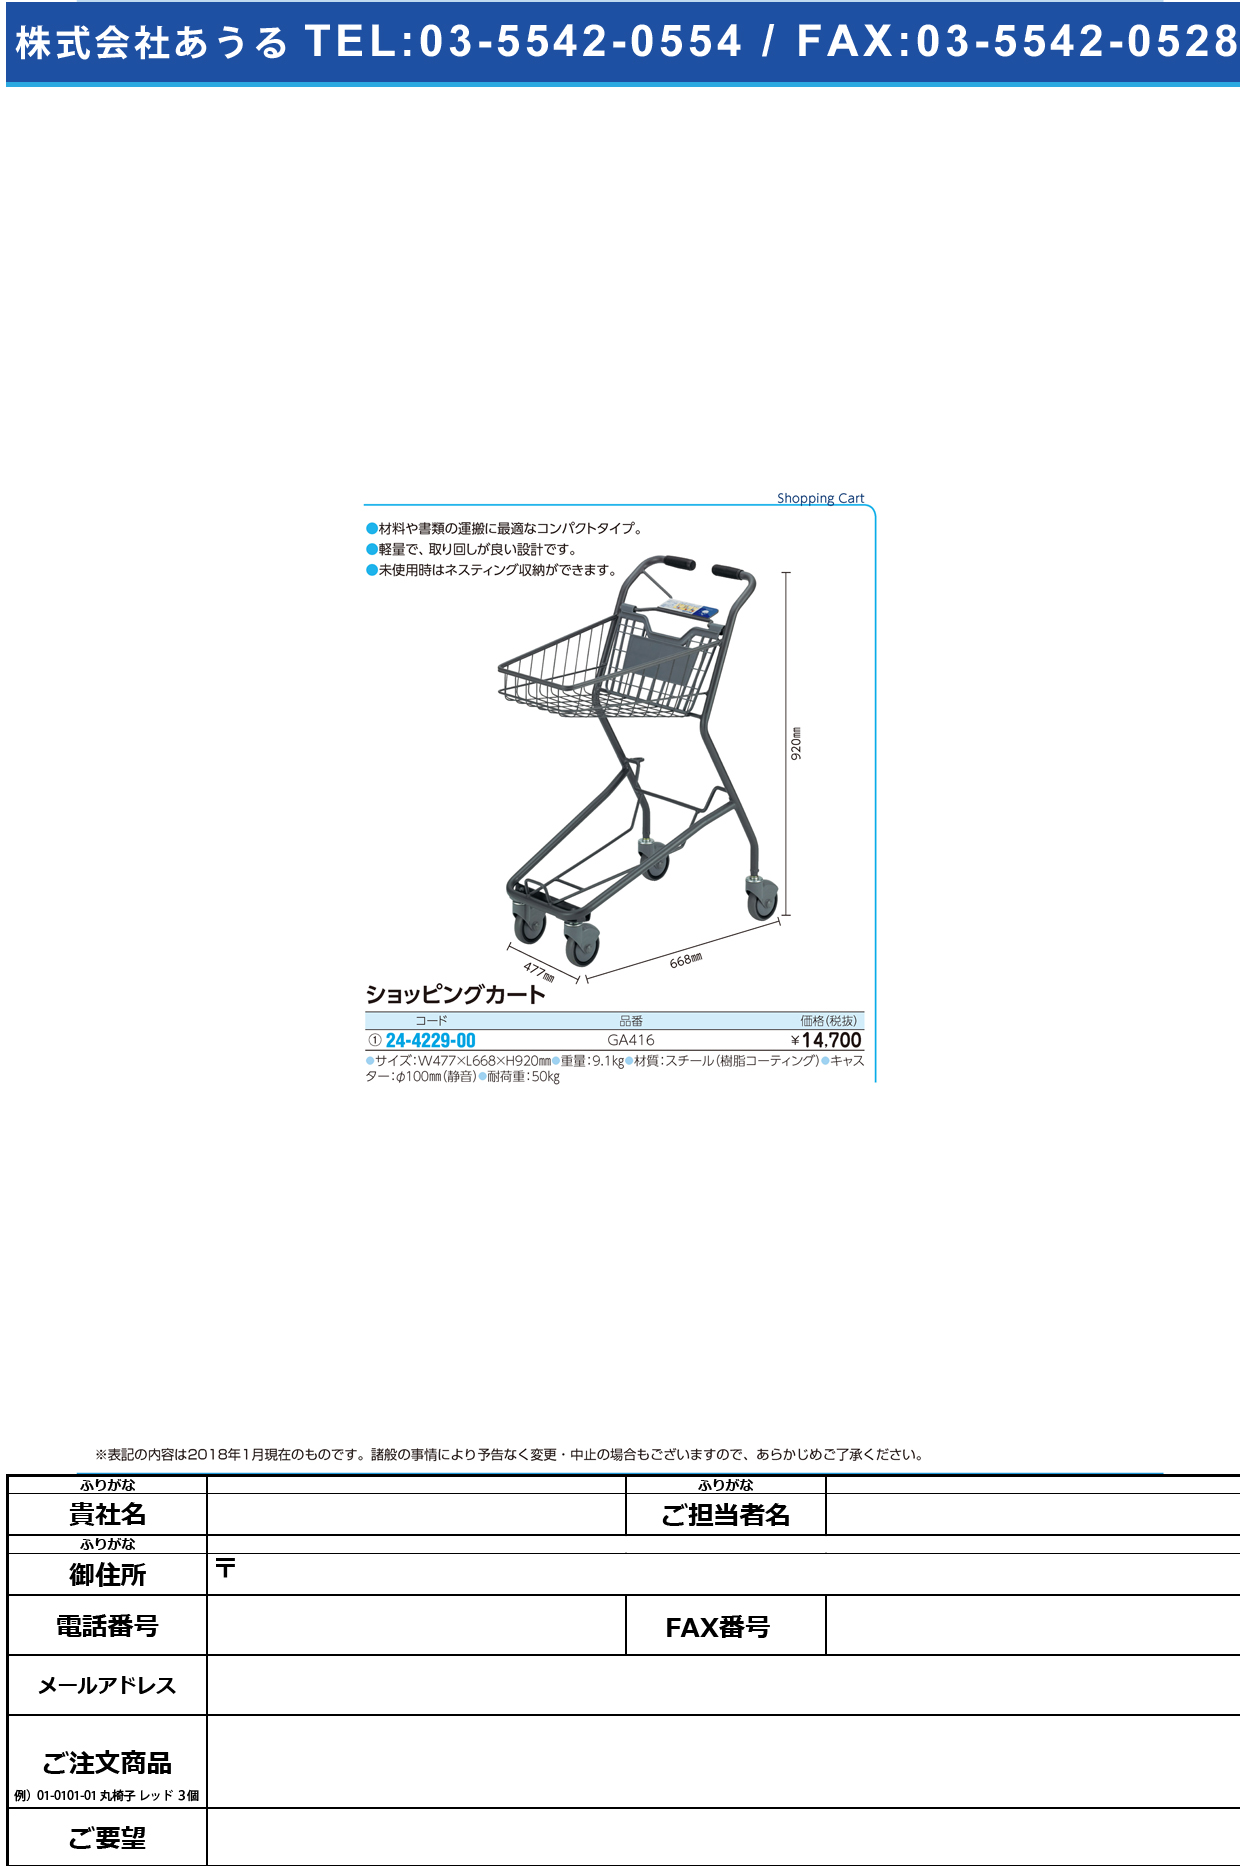 (24-4229-00)ショッピングカート（１９Ｂ） GA416 ｼｮｯﾋﾟﾝｸﾞｶｰﾄ19B(河淳)【1台単位】【2019年カタログ商品】